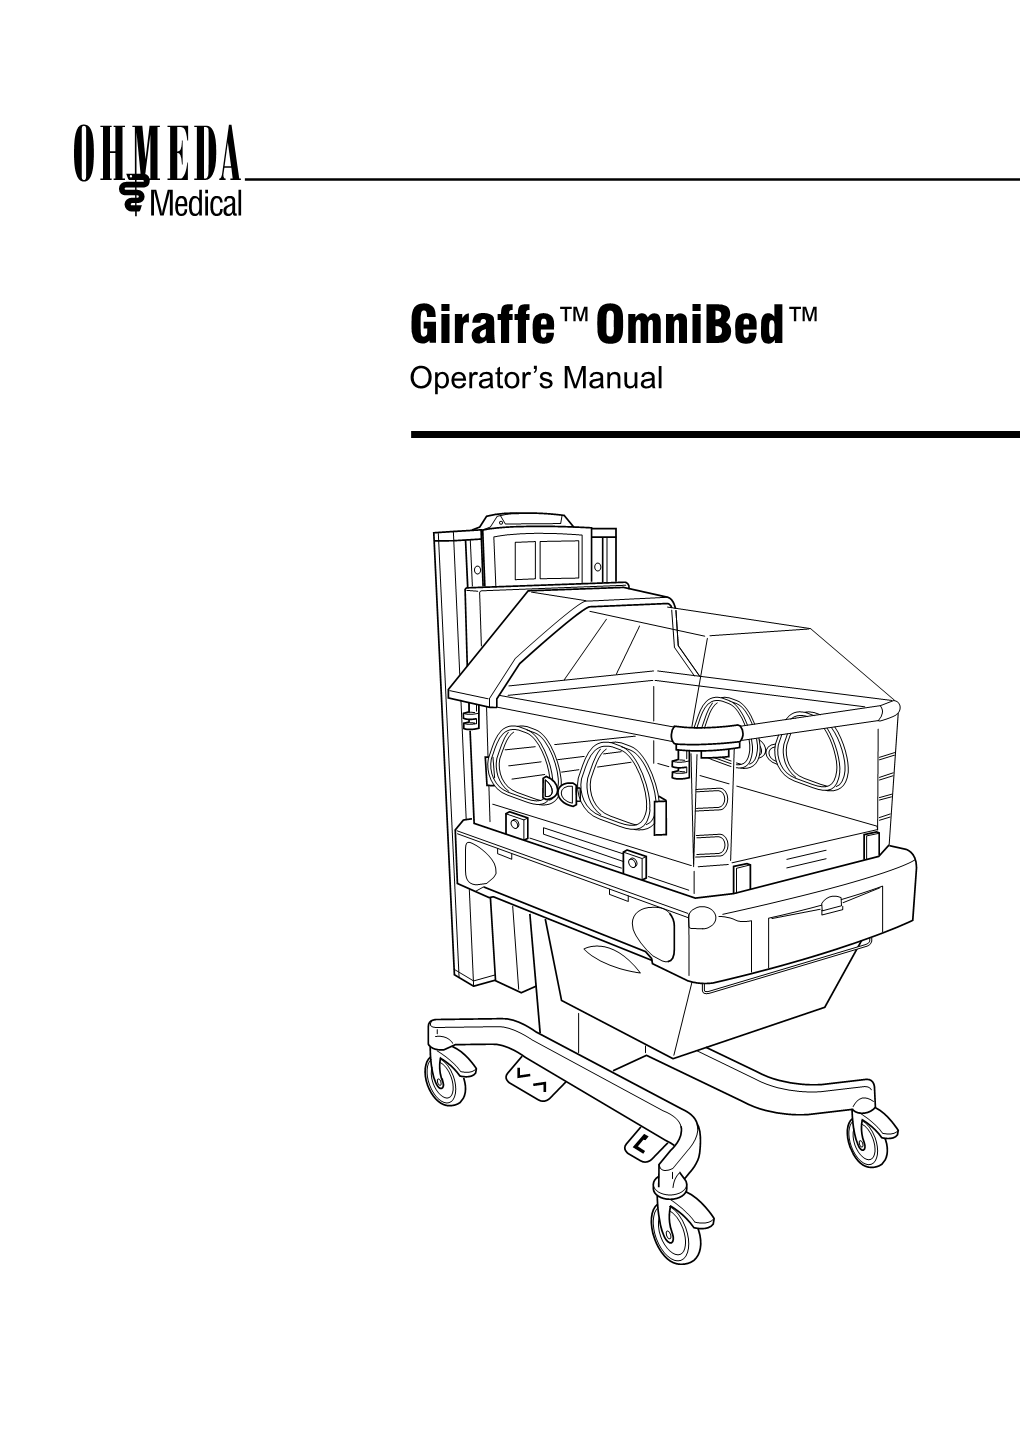 Ohmeda-Giraffe-Omnibed-Incubator-User-Manual